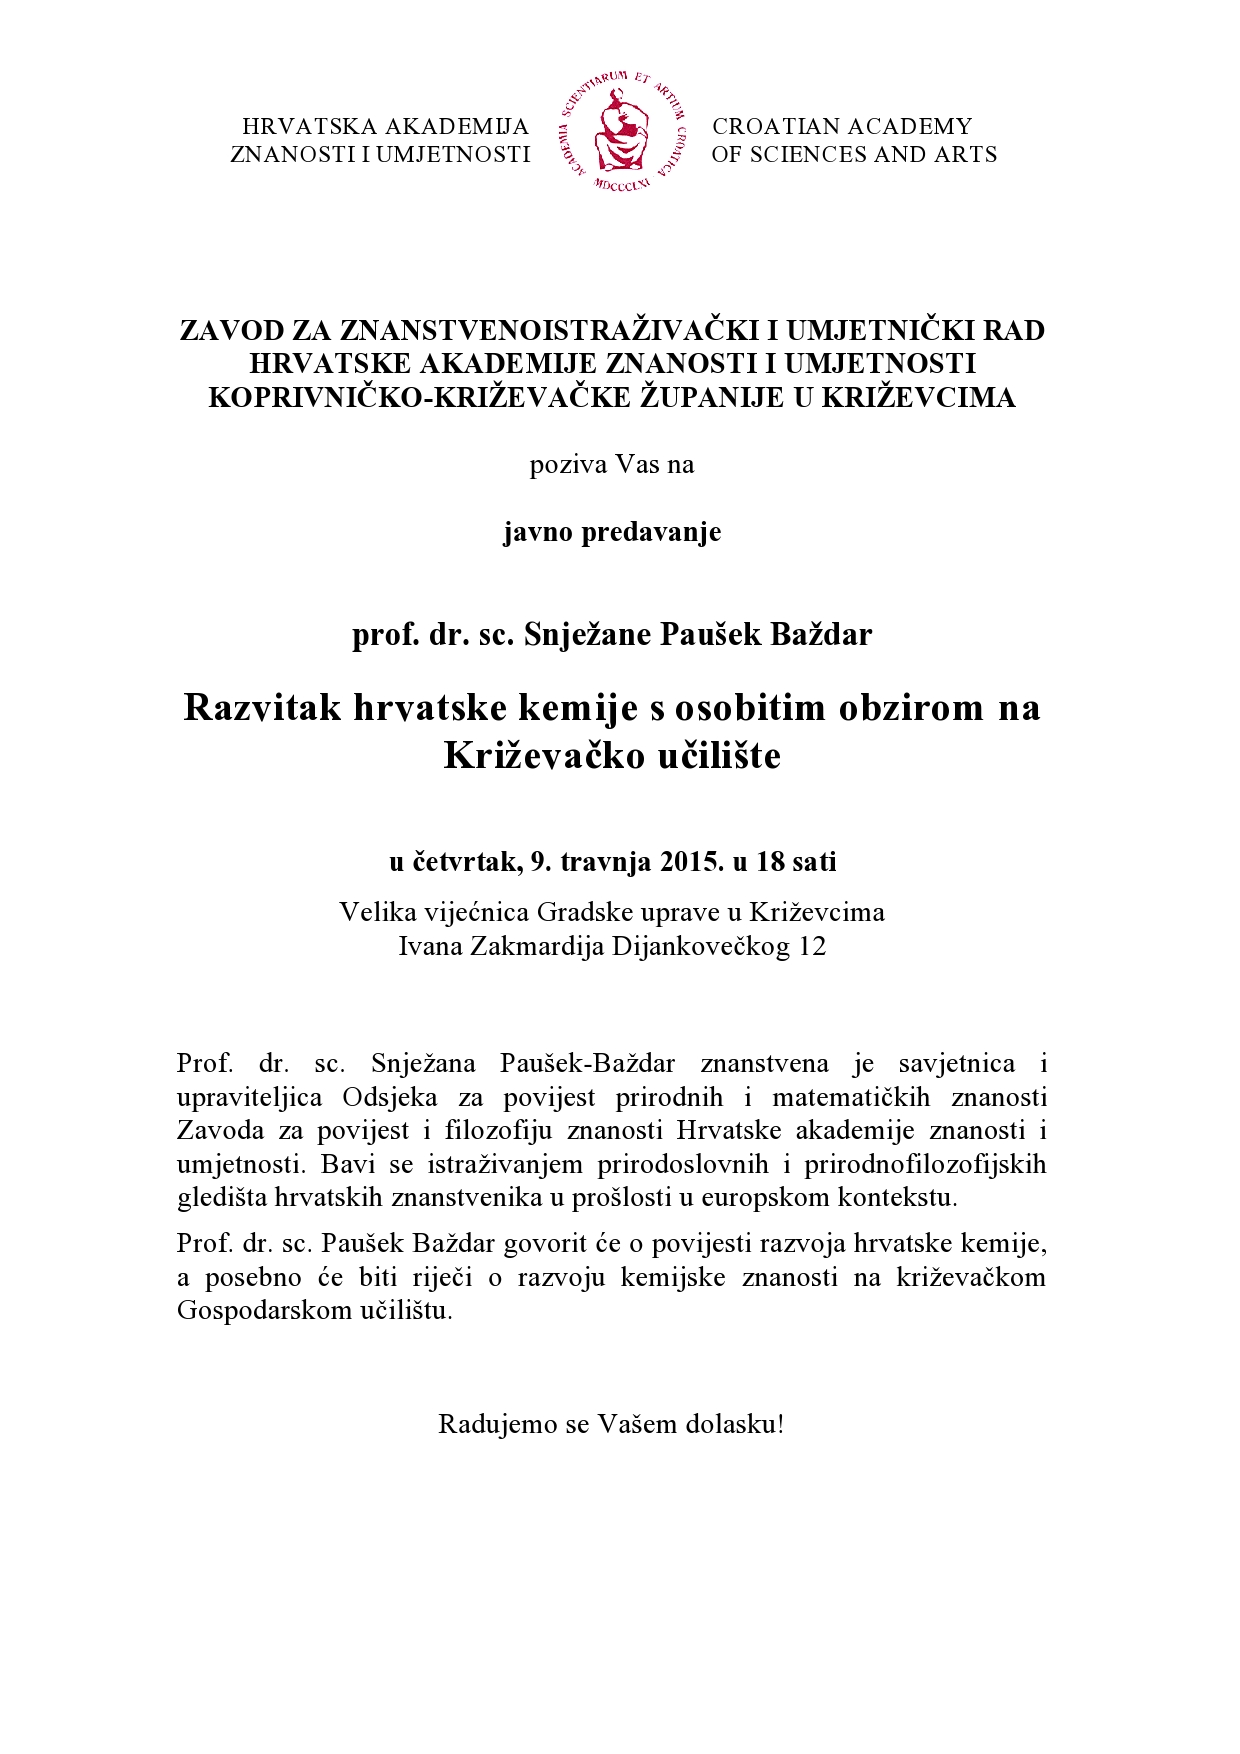 Poziv predavanje Pausek Bazdar_Krizevci_09.travnja - ispravljeno-page0001